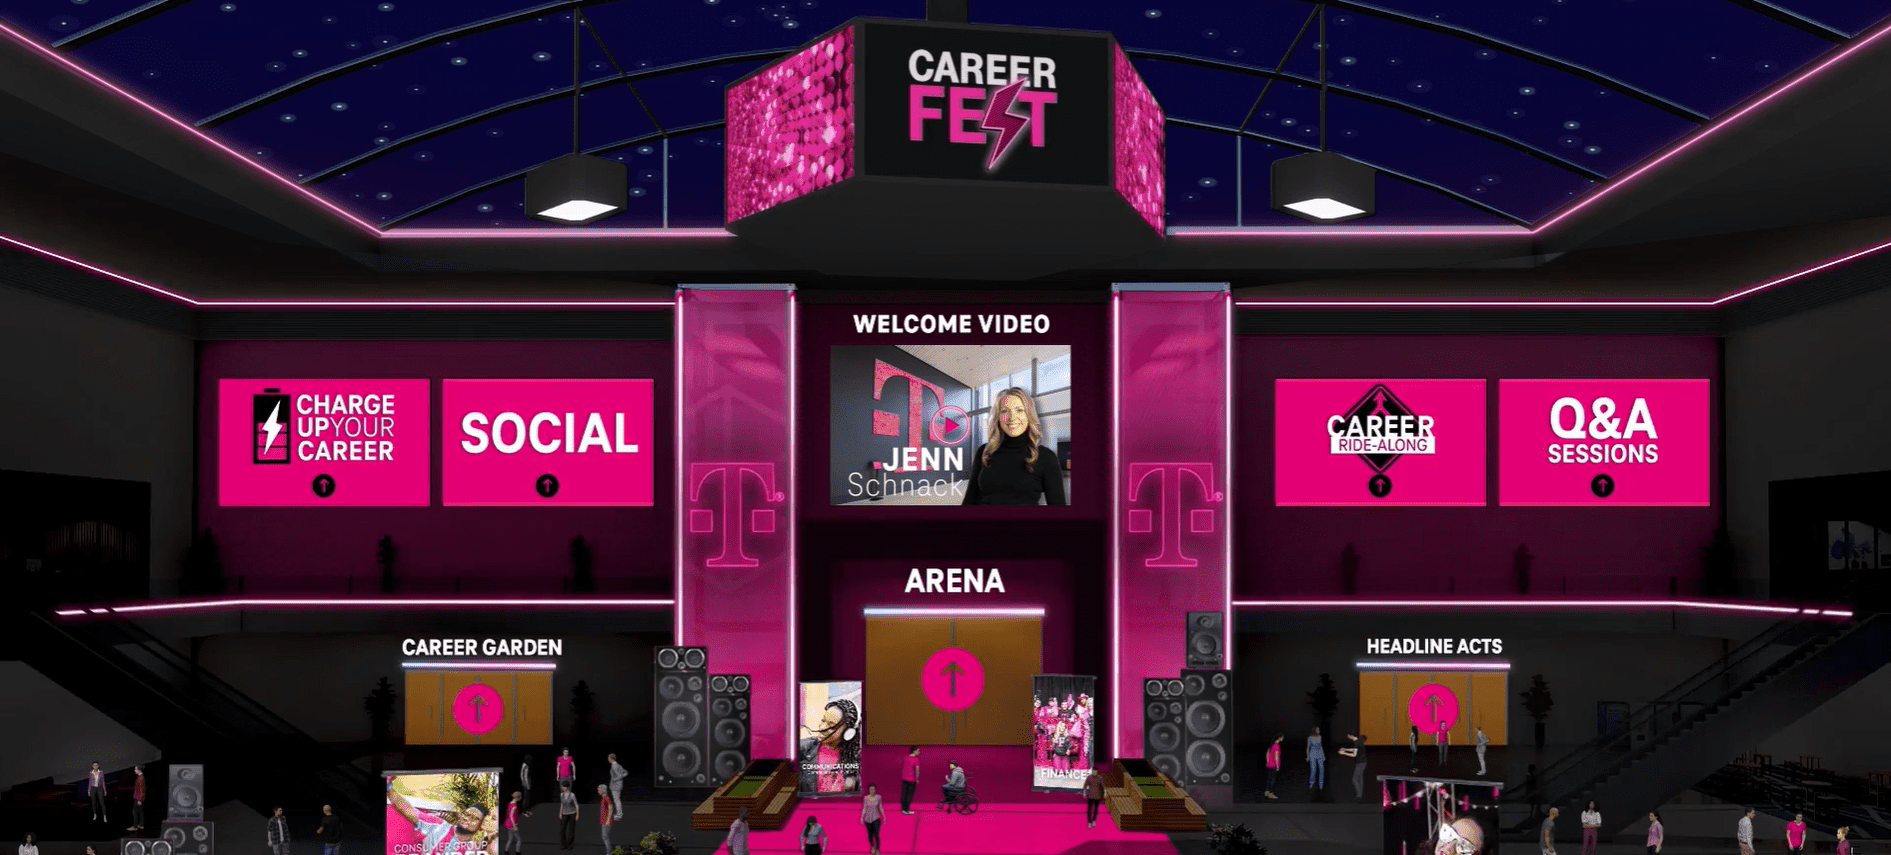 3D lobby of T-Mobile CareerFest